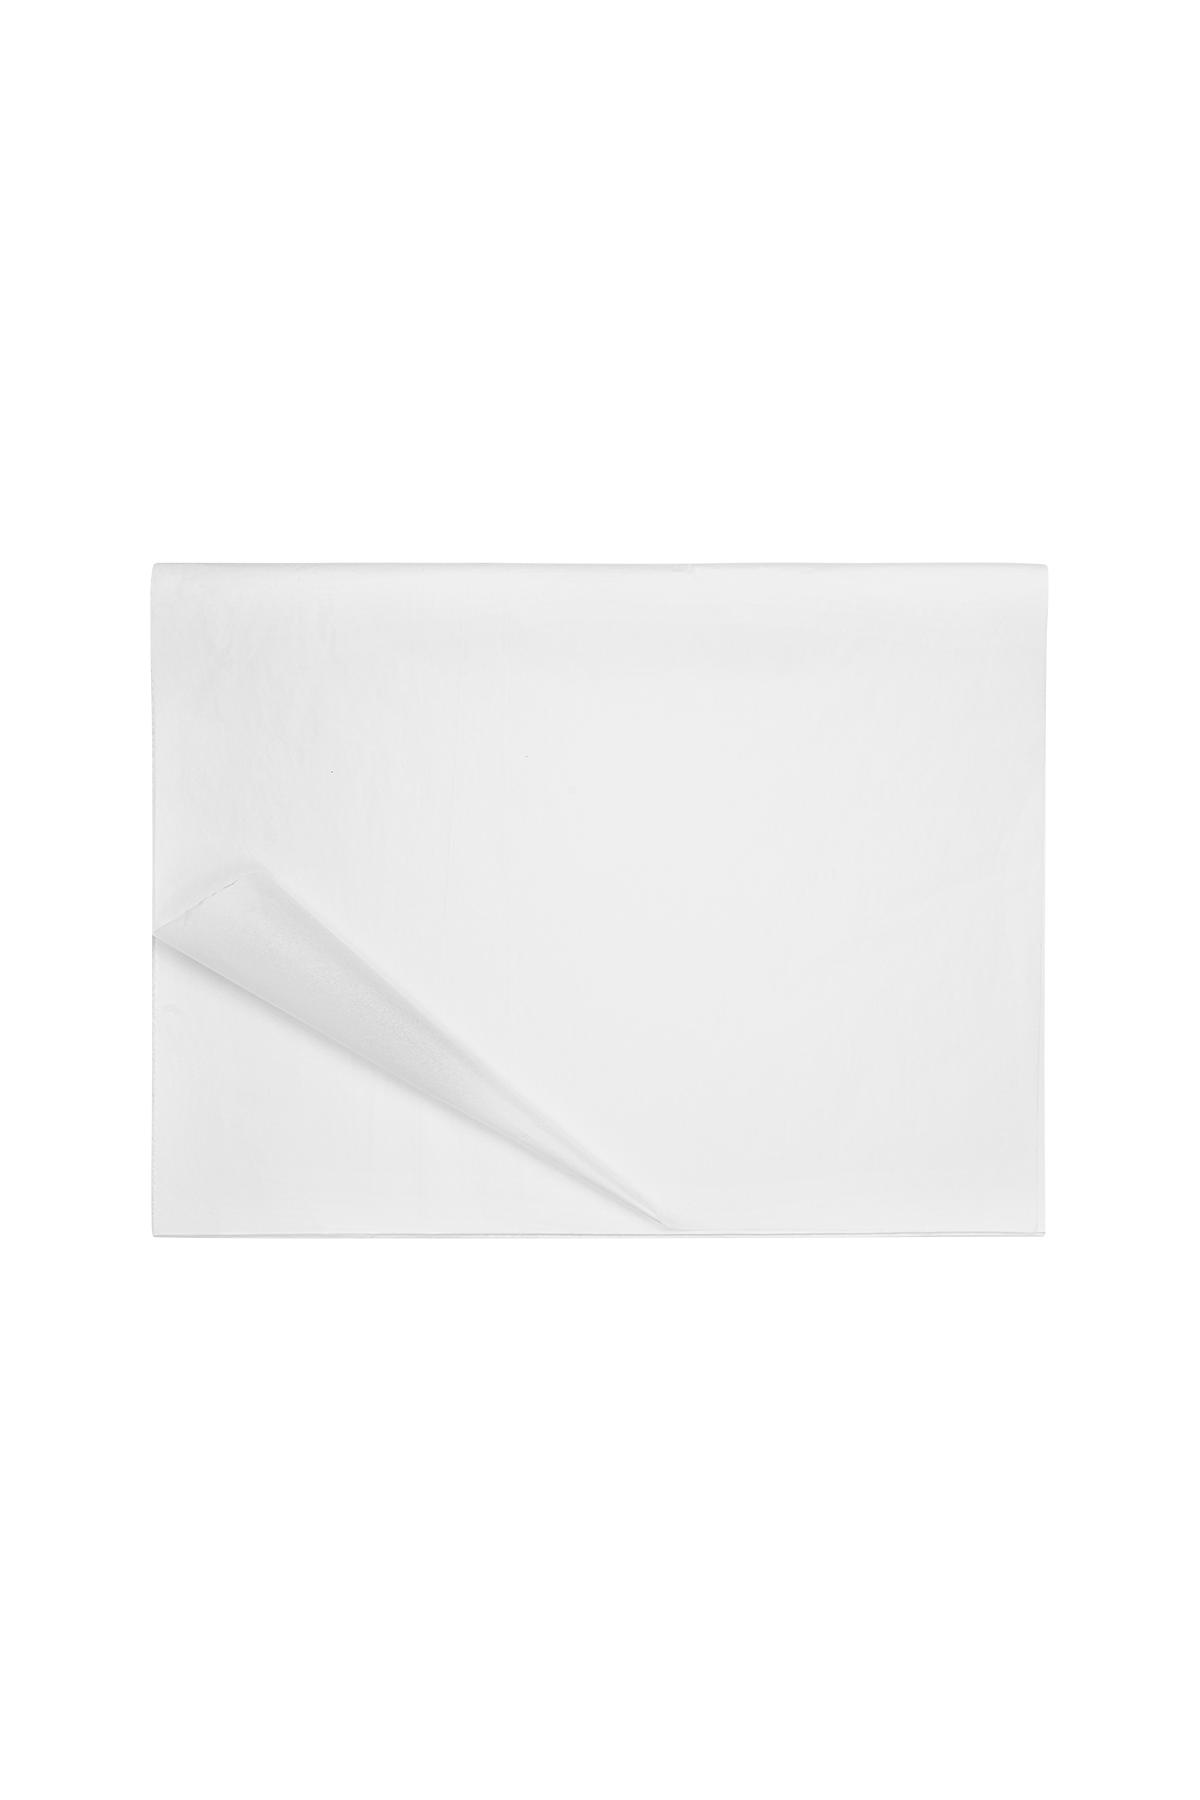 Tissue paper White h5 